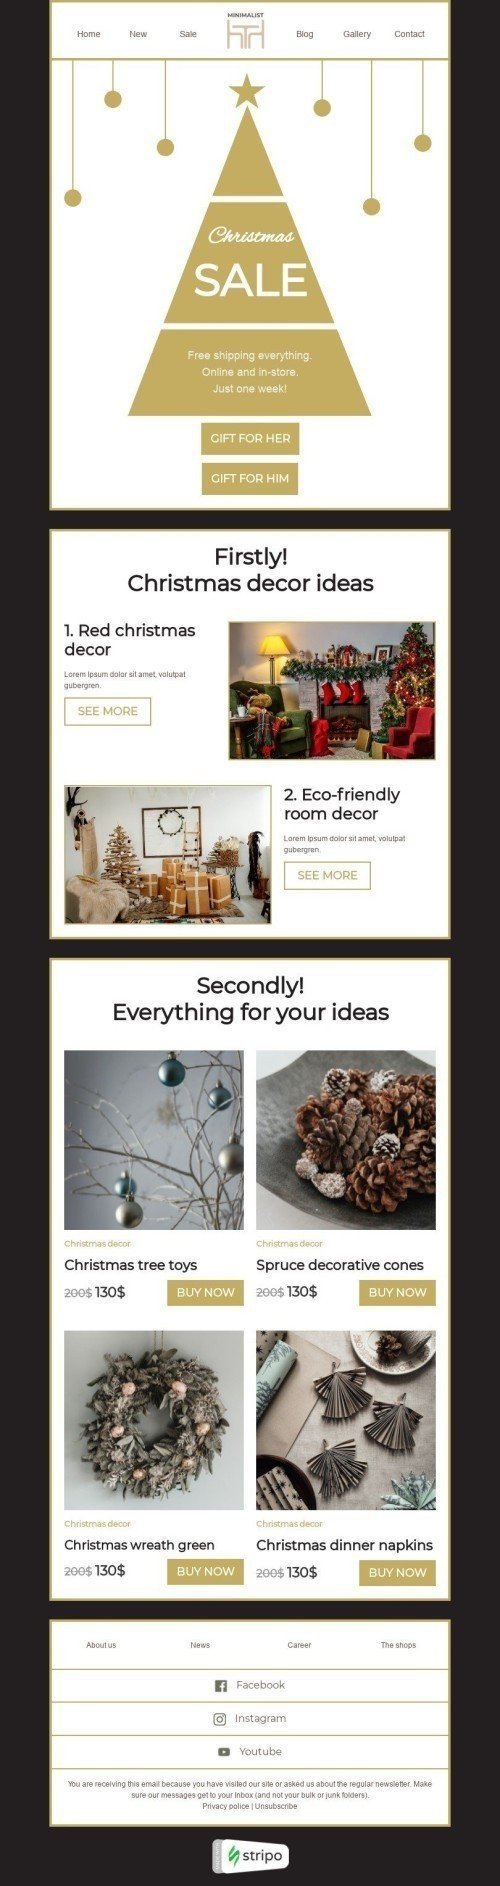 Plantilla de correo electrónico «Ideas de decoración navideña» de Navidad para la industria de Muebles, interior y bricolaje Vista de móvil